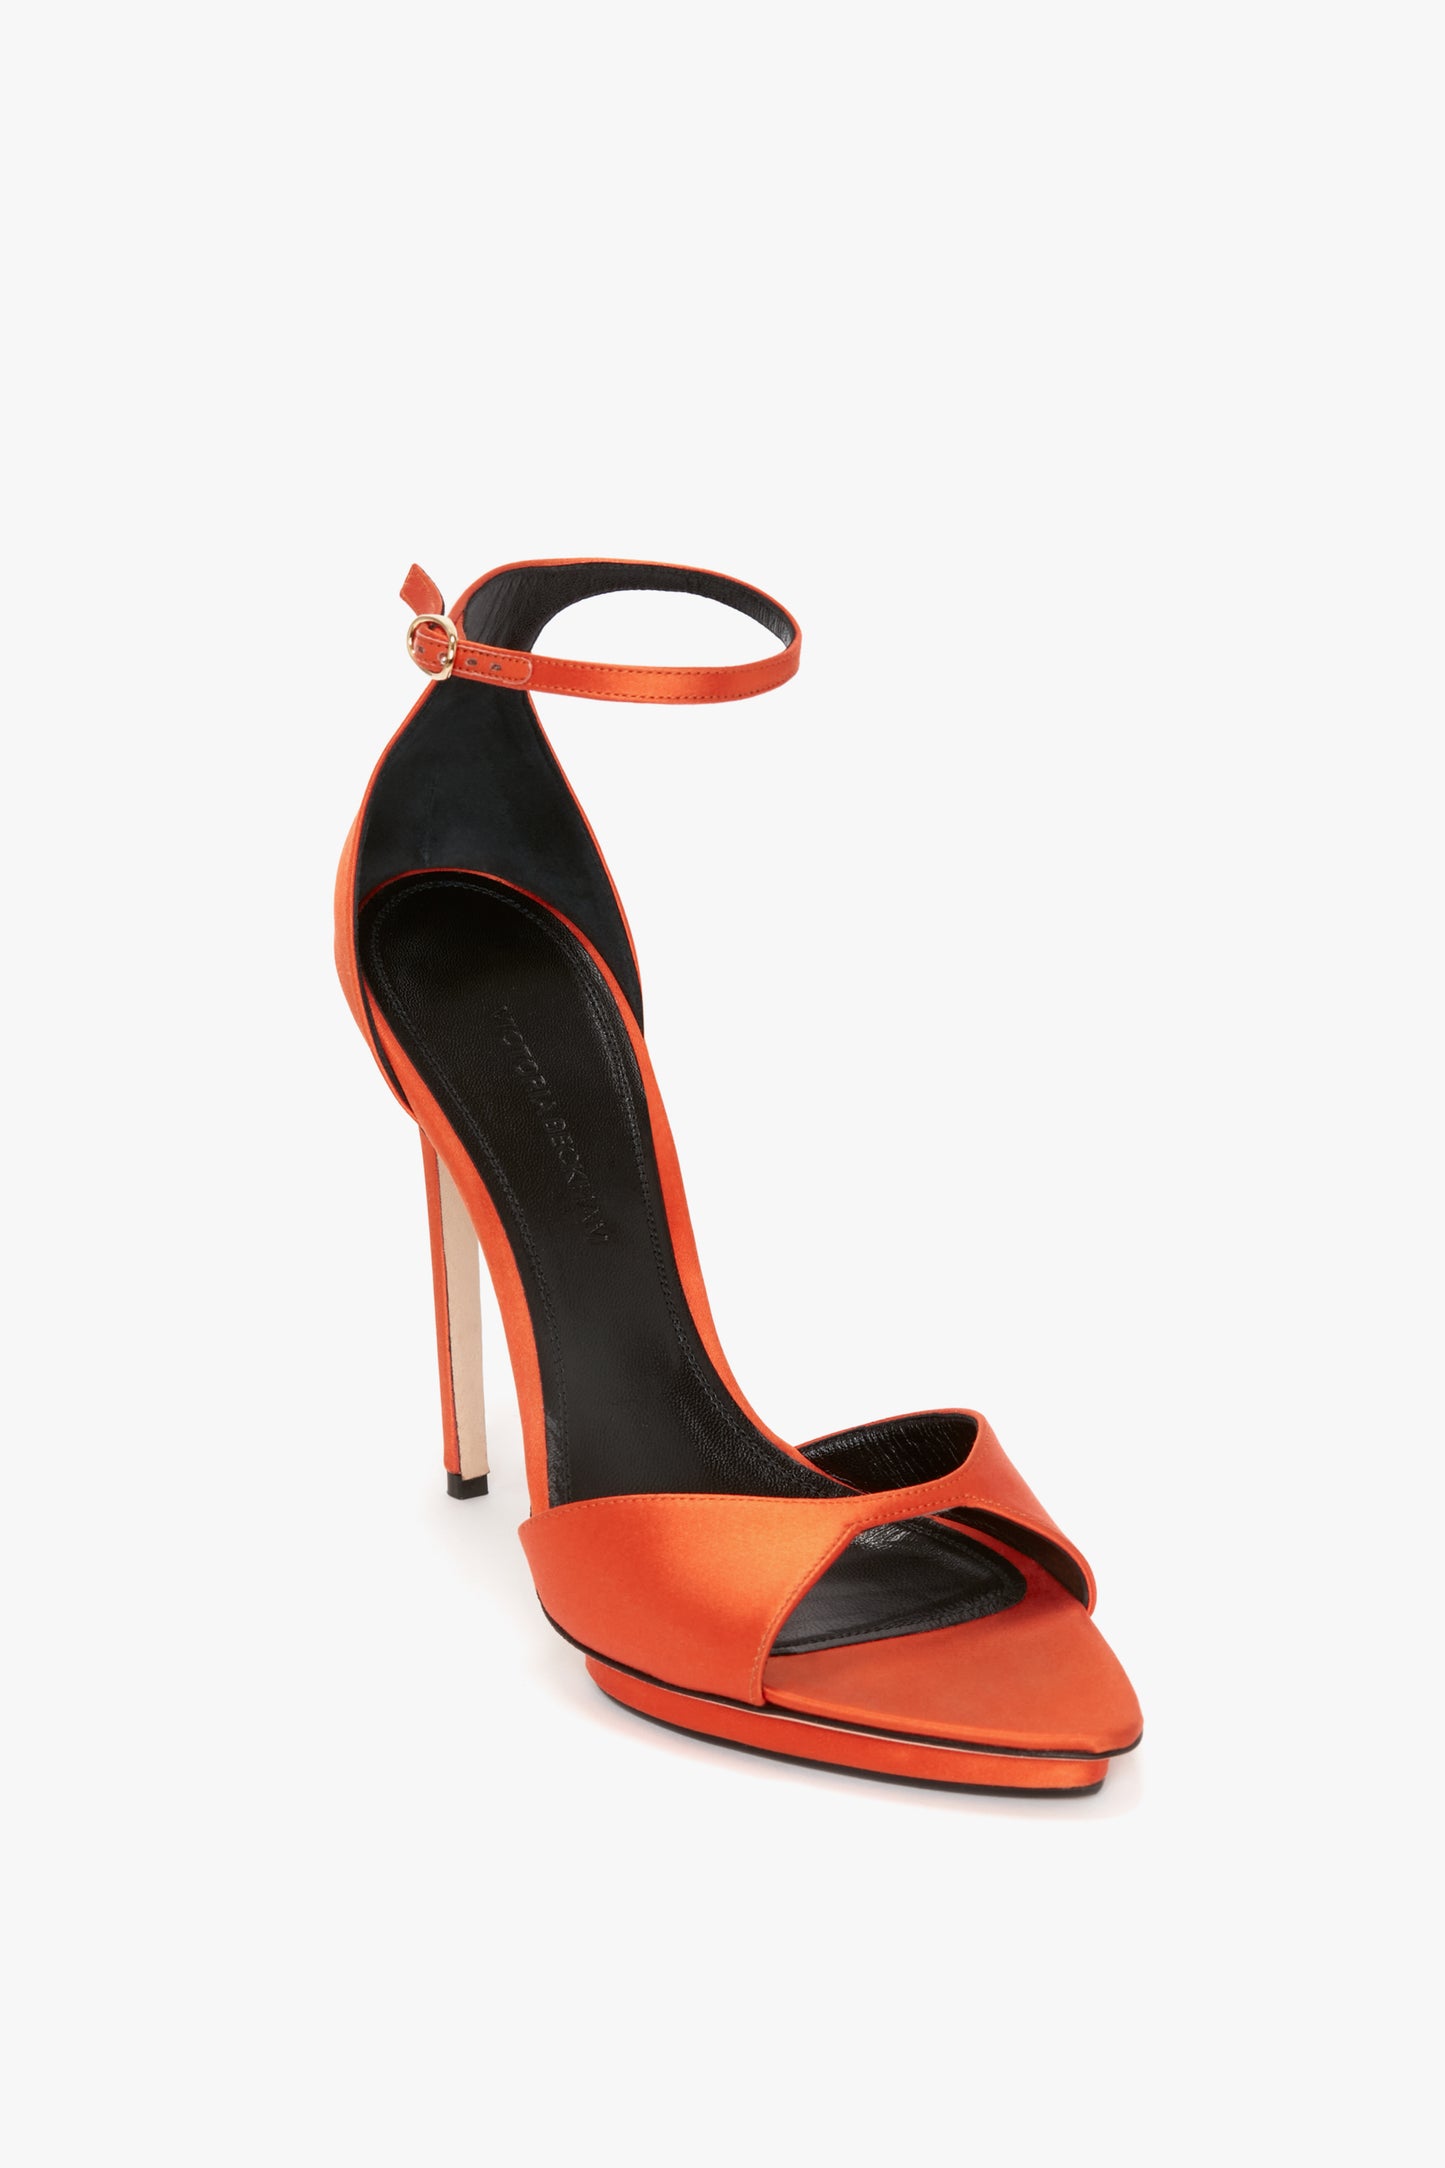 Catalina Heels- Orange | Single sole heels, Metallic heels, Heels